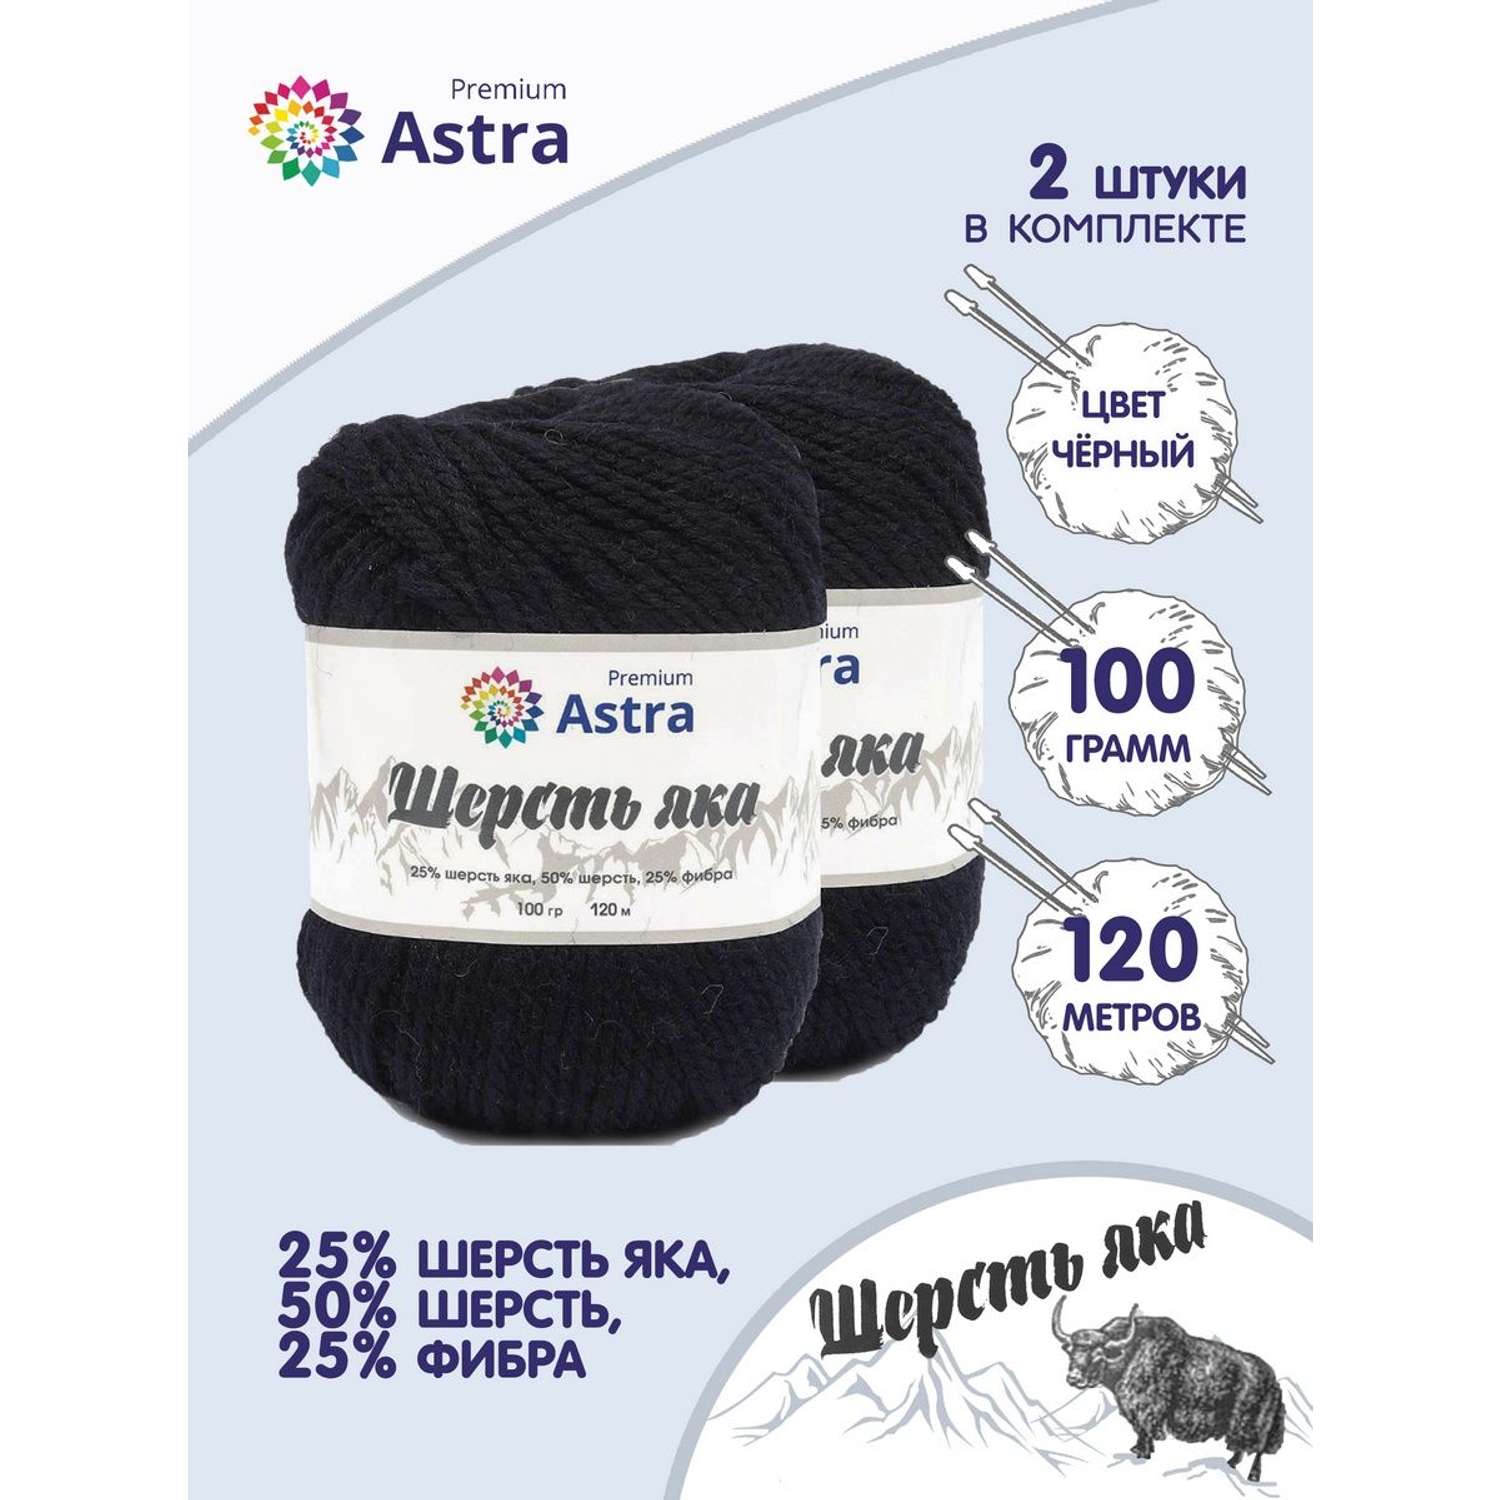 Пряжа Astra Premium Шерсть яка Yak wool теплая мягкая 100 г 120 м 12 черный 2 мотка - фото 1